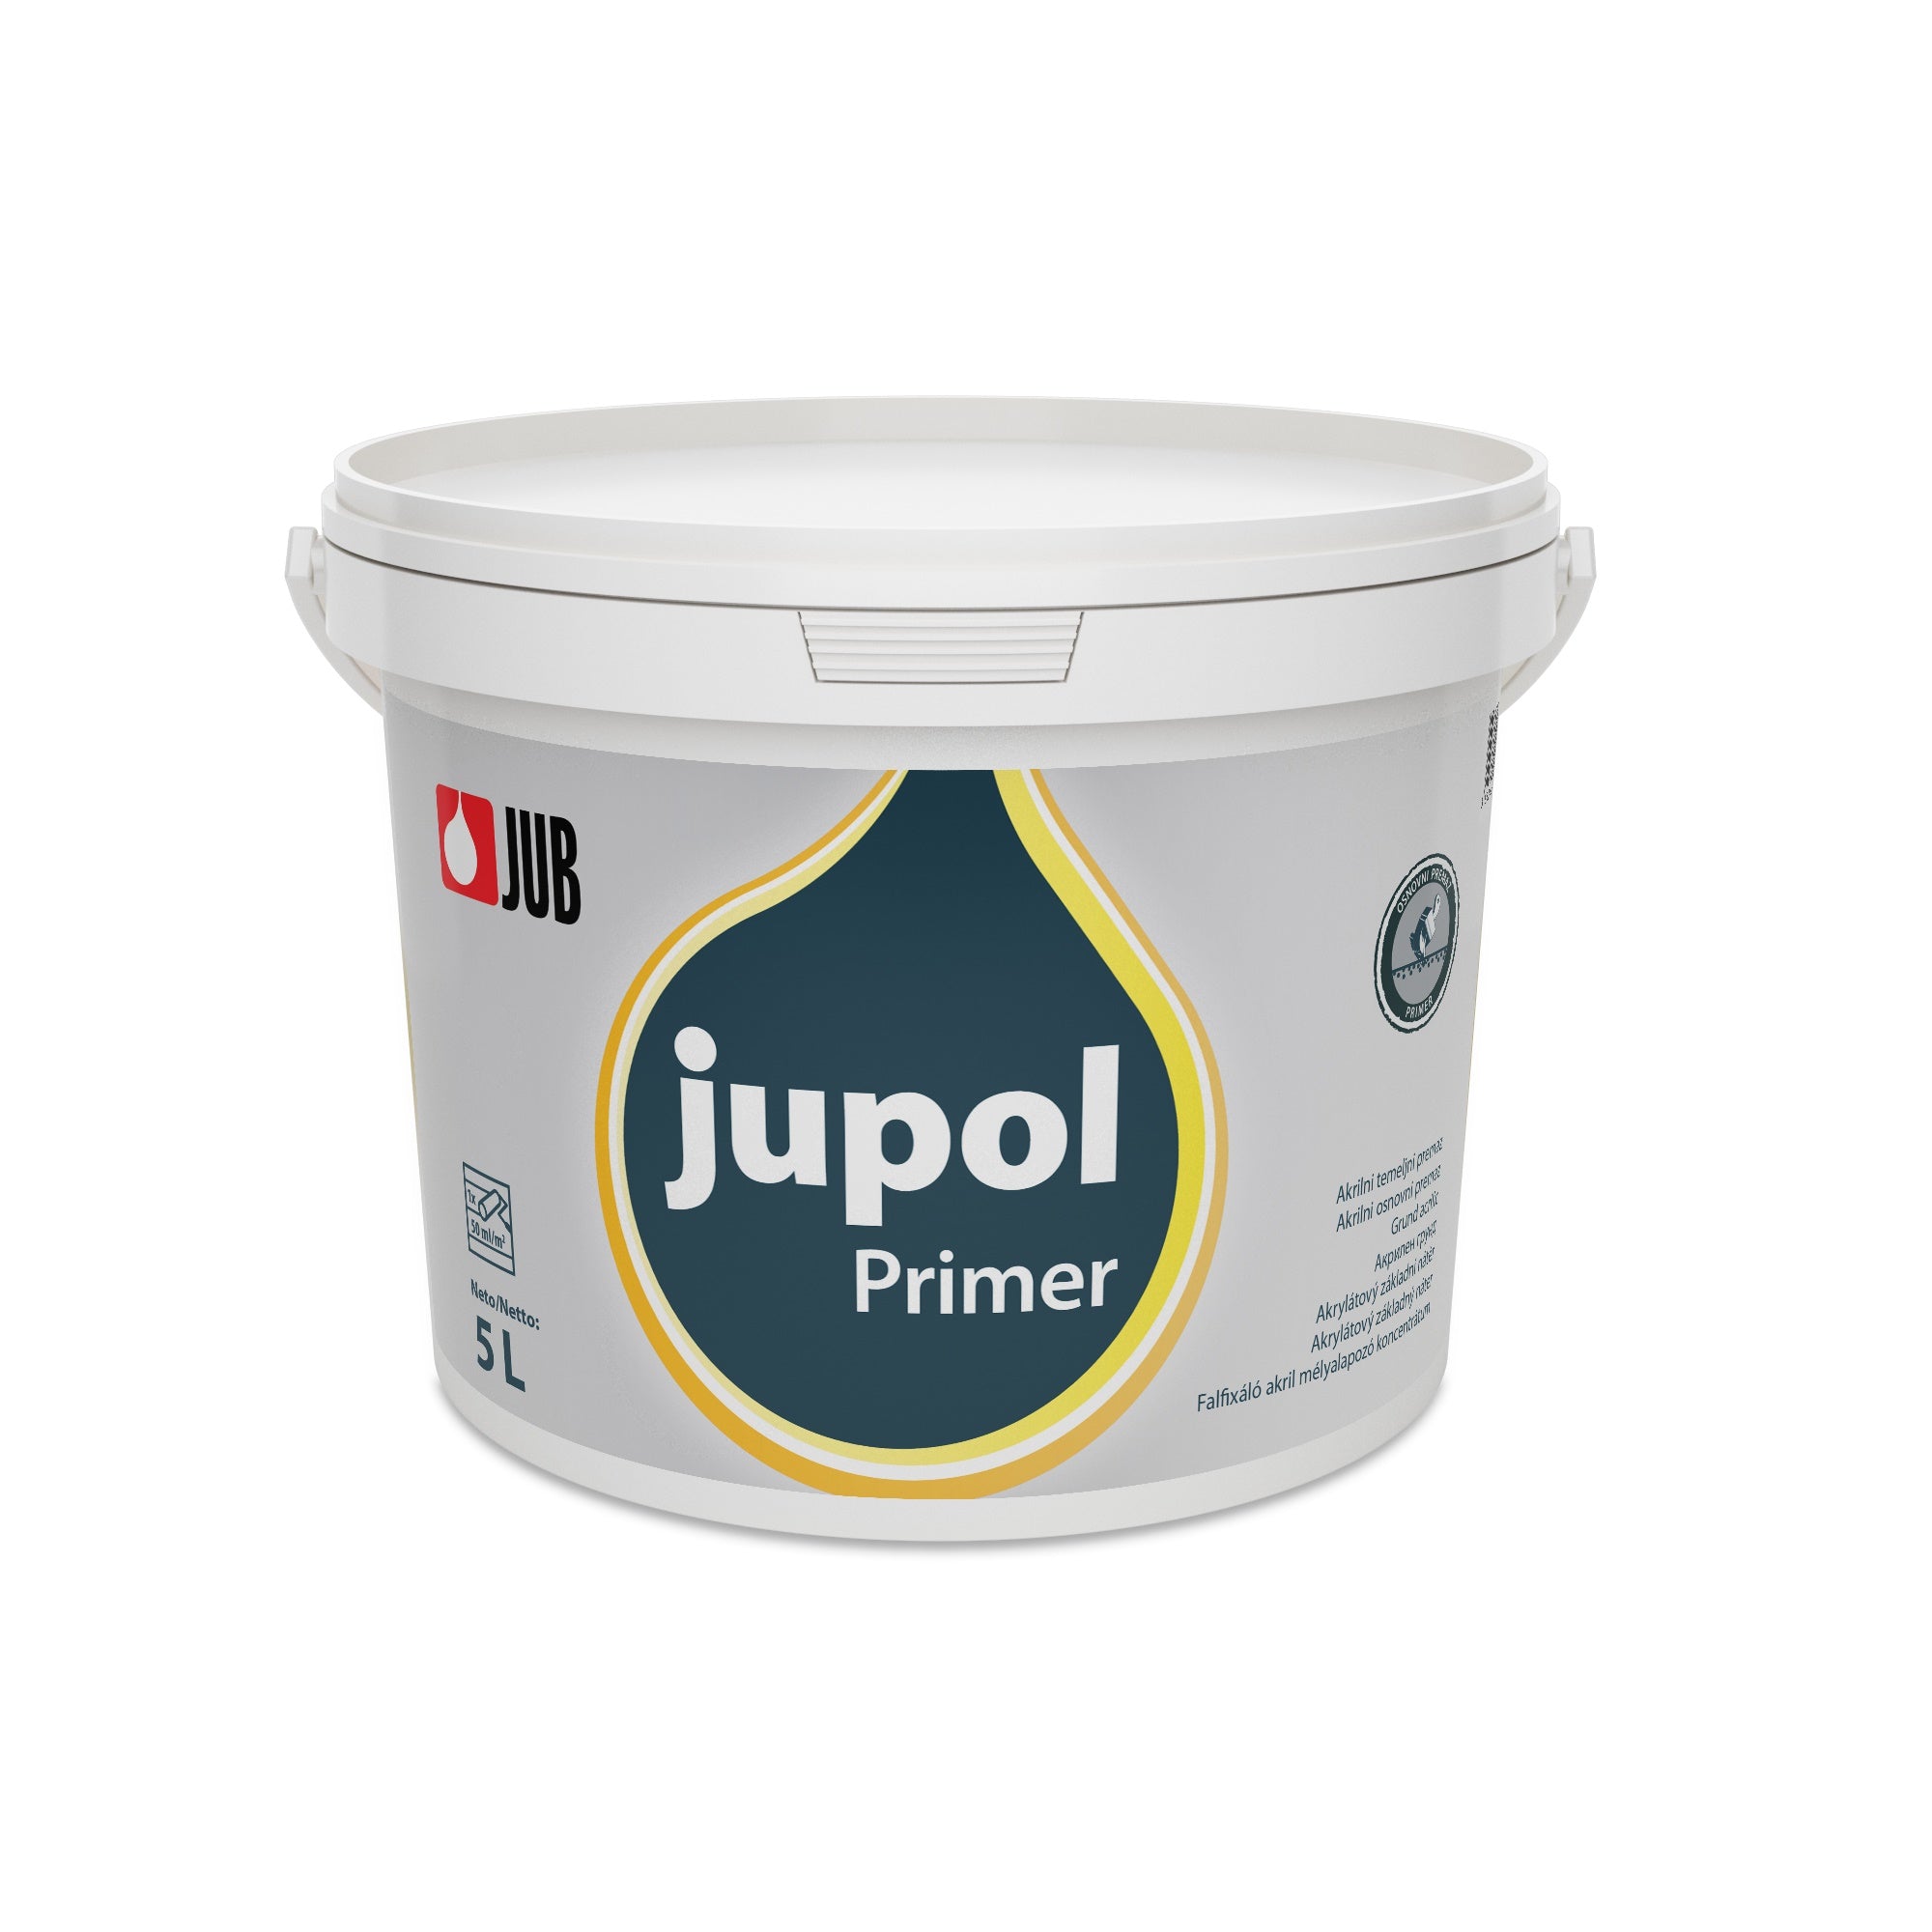 JUB JUPOL Primer vnitřní akrylátový základní nátěr 5 l